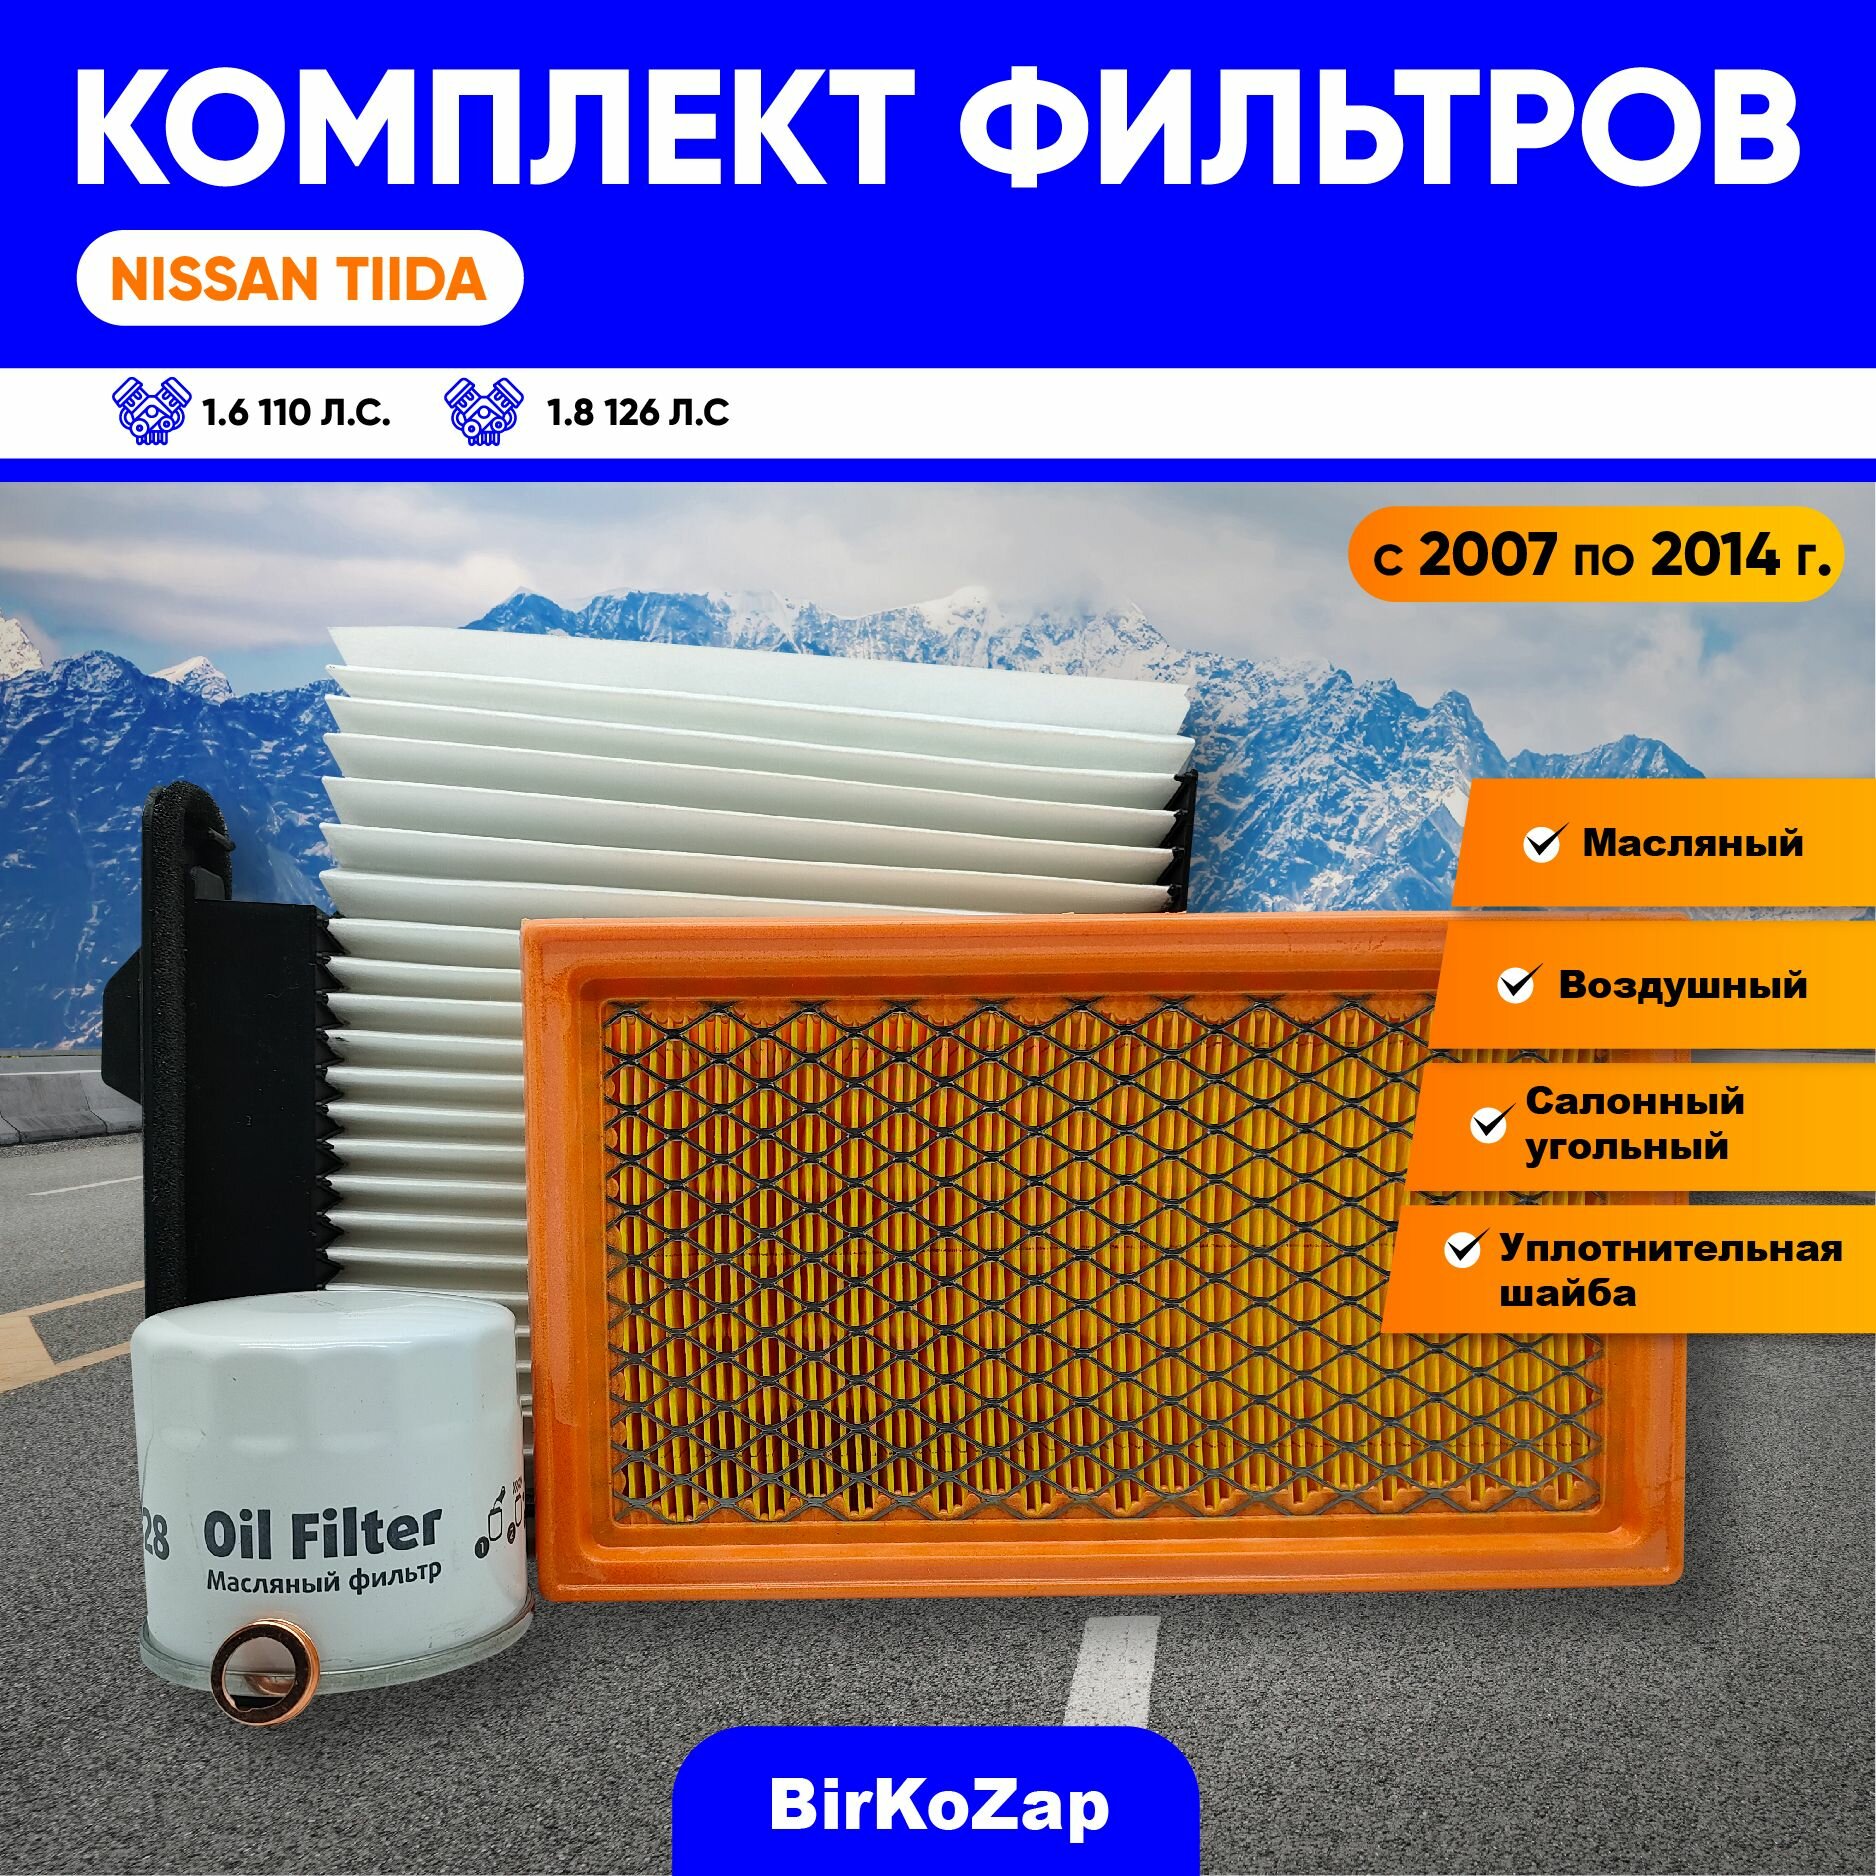 Комплект фильтров для ТО NISSAN TiiDA (фильтр масляный воздушный салонный+прокладка под сливную пробку)